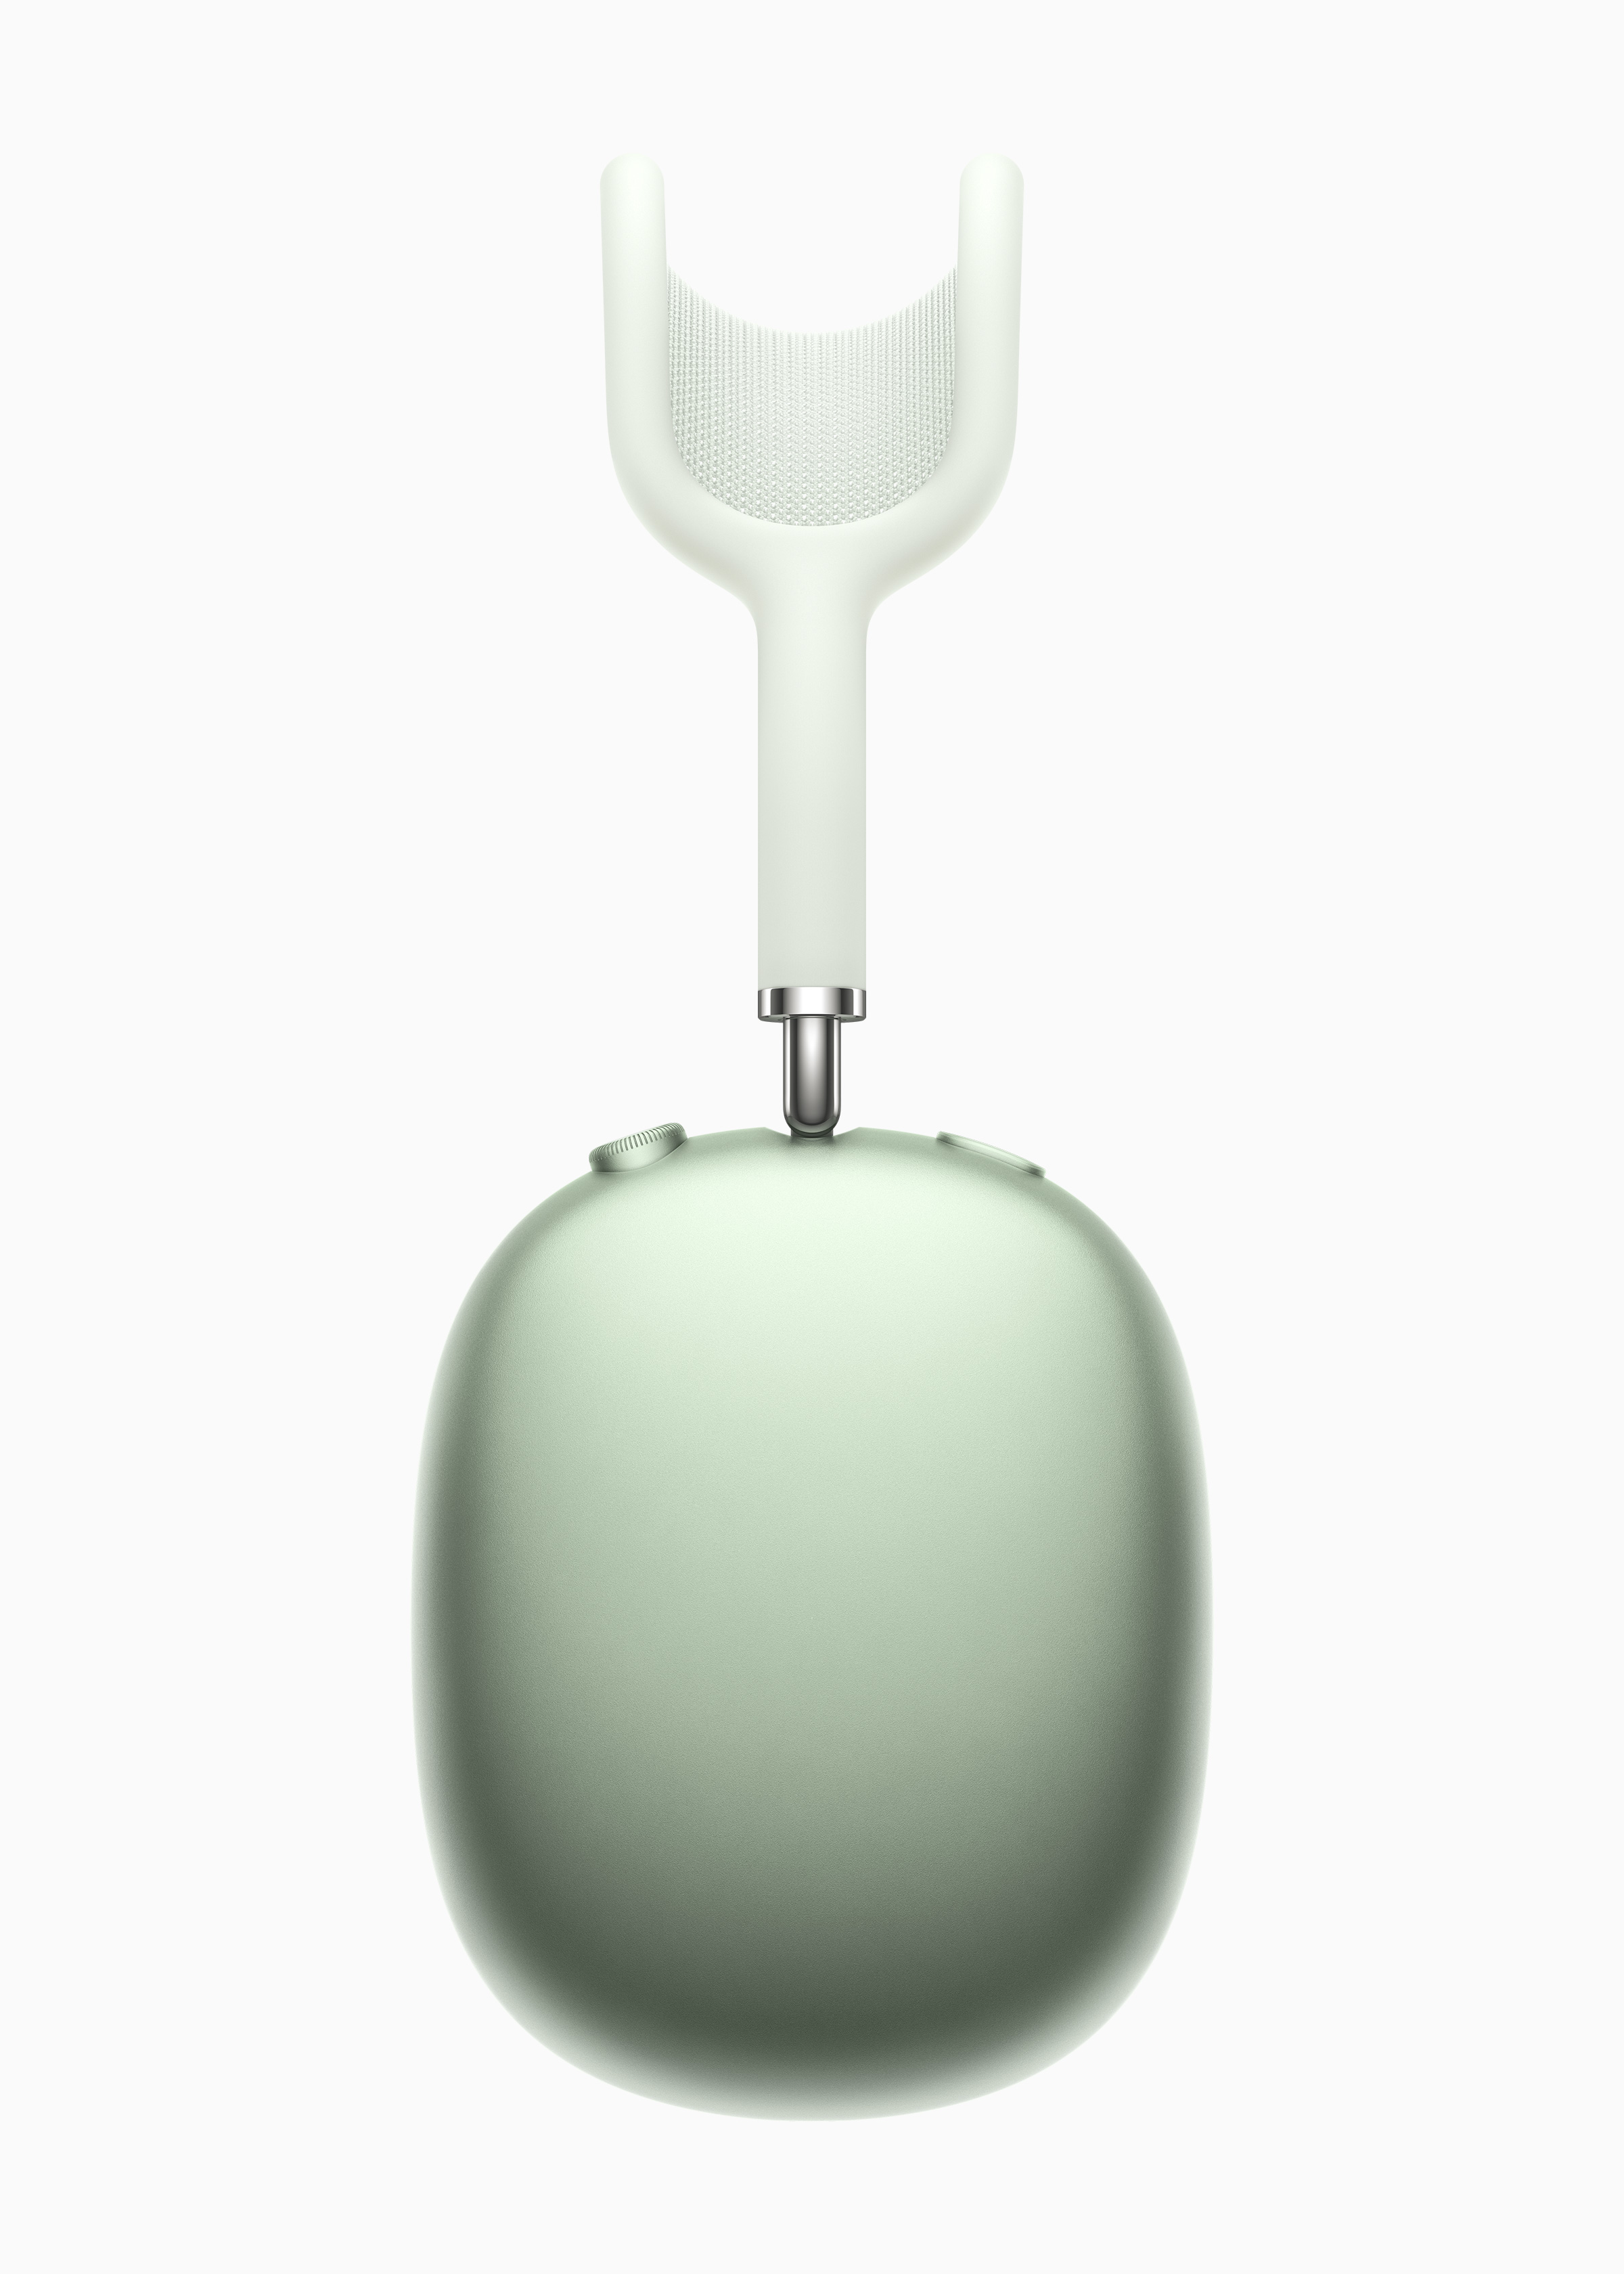 Apple AirPods Max : le casque sans fil le plus moche et plus cher